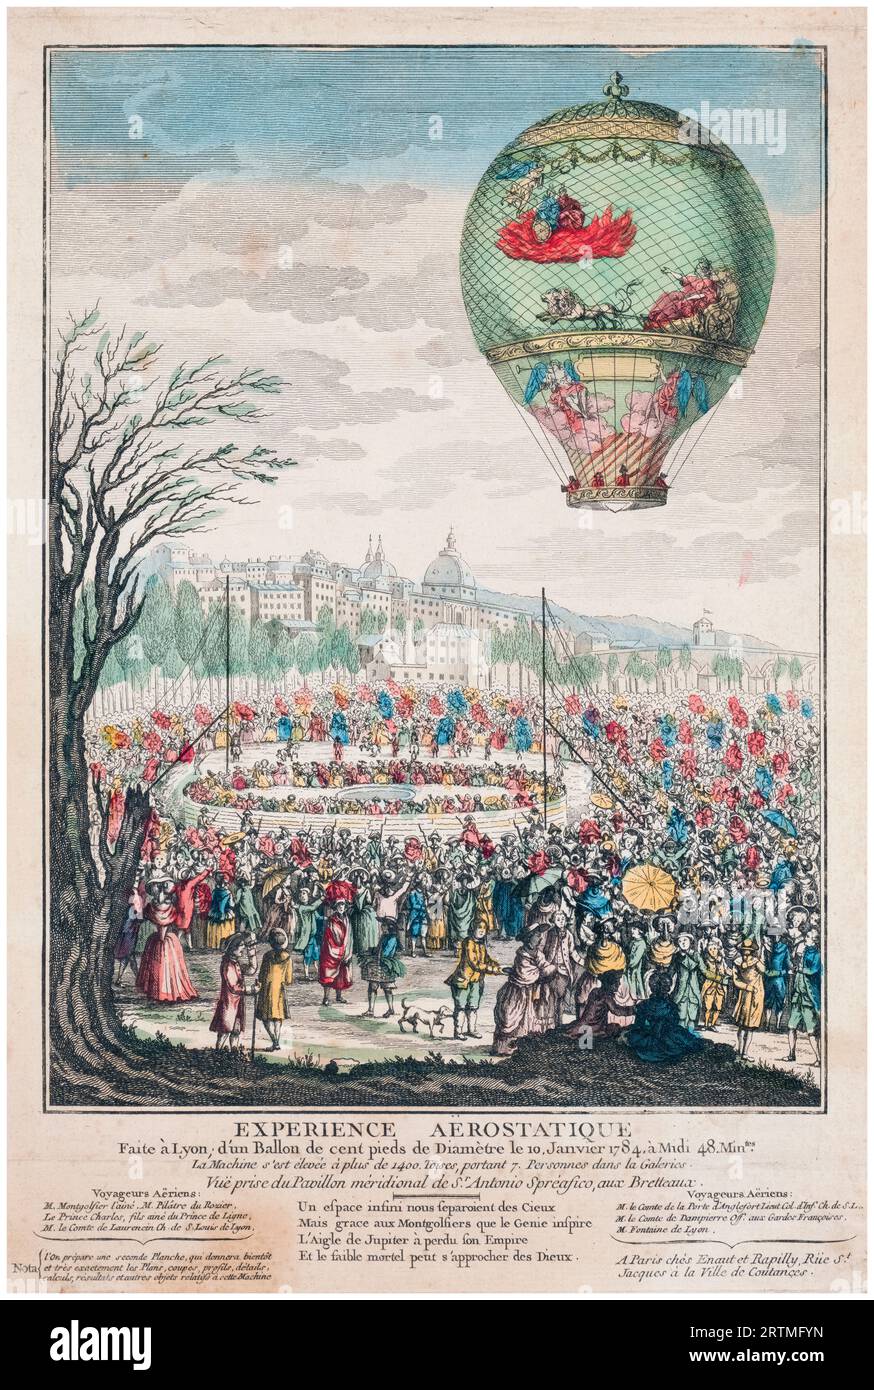 La montgolfière 'le Flesselles' montant au-dessus de Lyon, France le 19 janvier 1784 transportant sept passagers dont Joseph Montgolfier et Jean François Pilâtre de Rozier, gravure colorée à la main, 1784 Banque D'Images